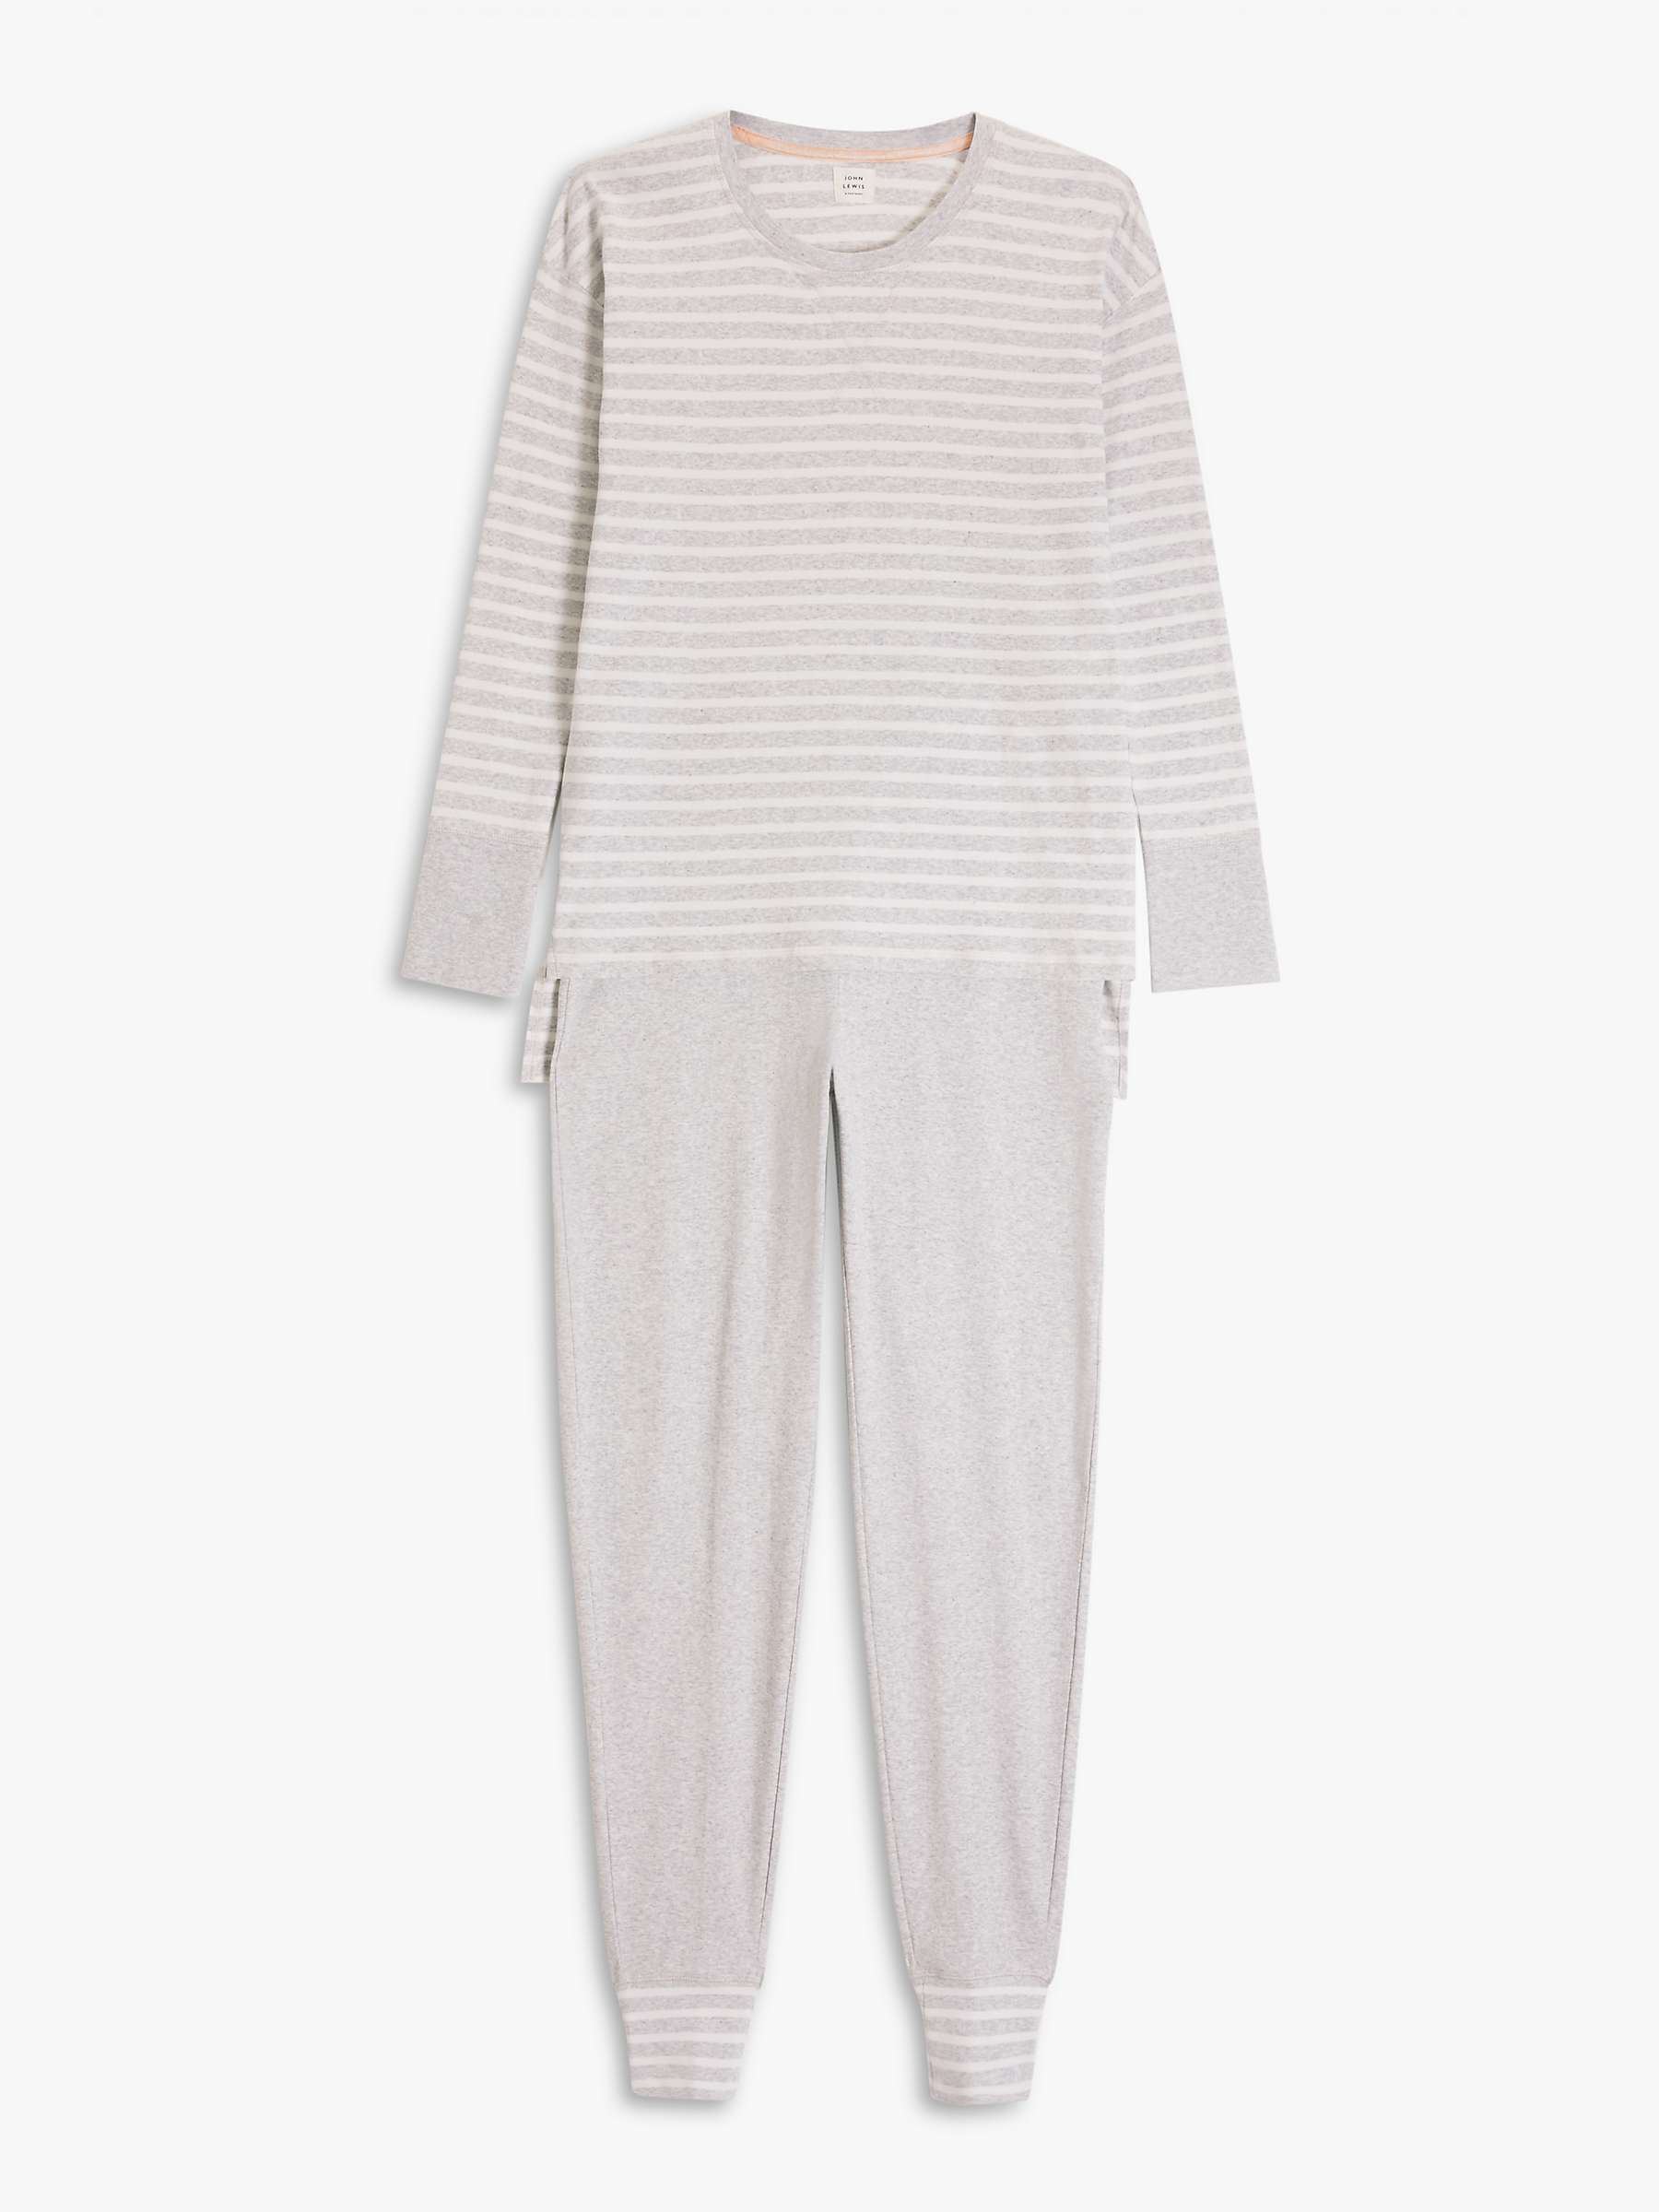 Buy John Lewis Edie Striped Cotton Pyjama Set, Light Grey Online at johnlewis.com